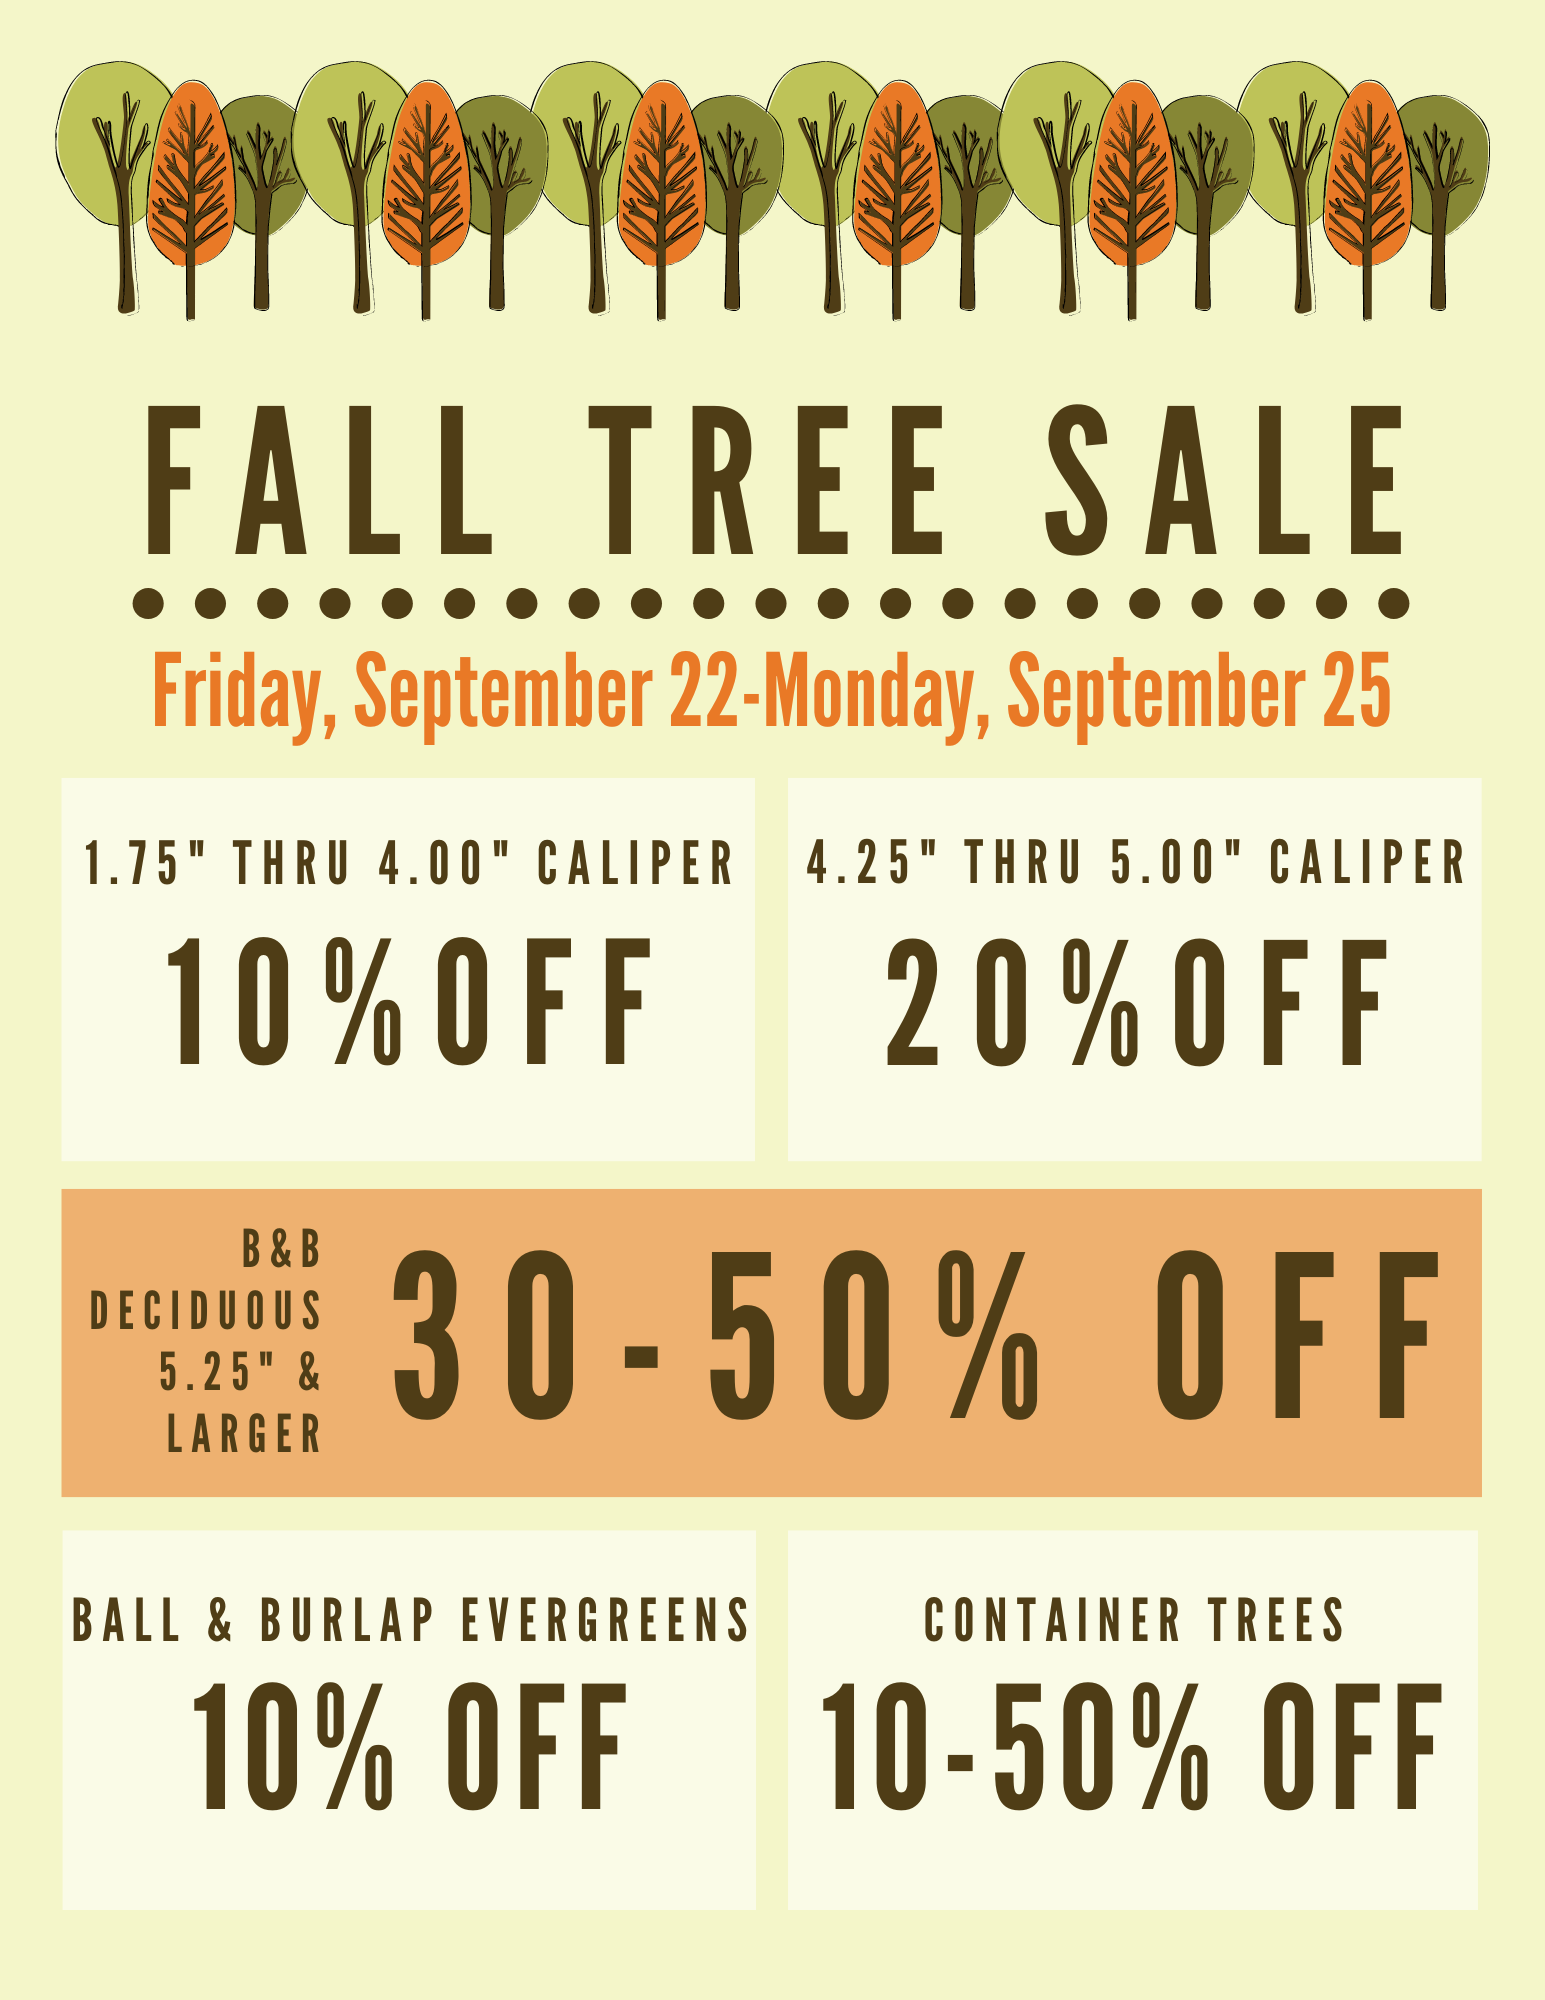 Tree Sale Prices